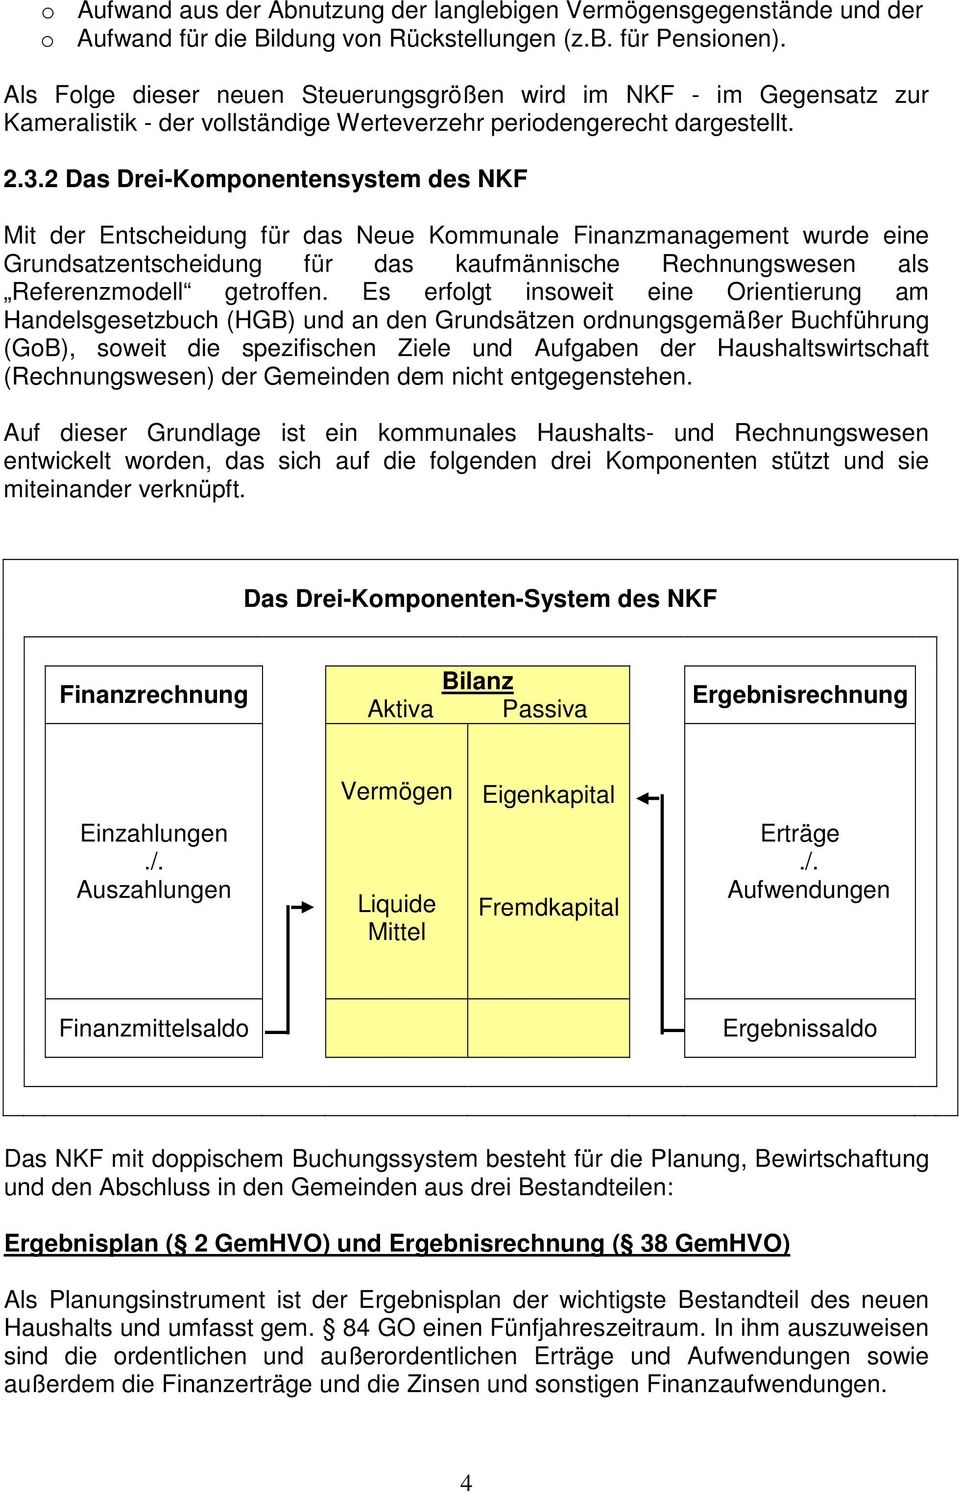 2 Das Drei-Komponentensystem des NKF Mit der Entscheidung für das Neue Kommunale Finanzmanagement wurde eine Grundsatzentscheidung für das kaufmännische Rechnungswesen als Referenzmodell getroffen.